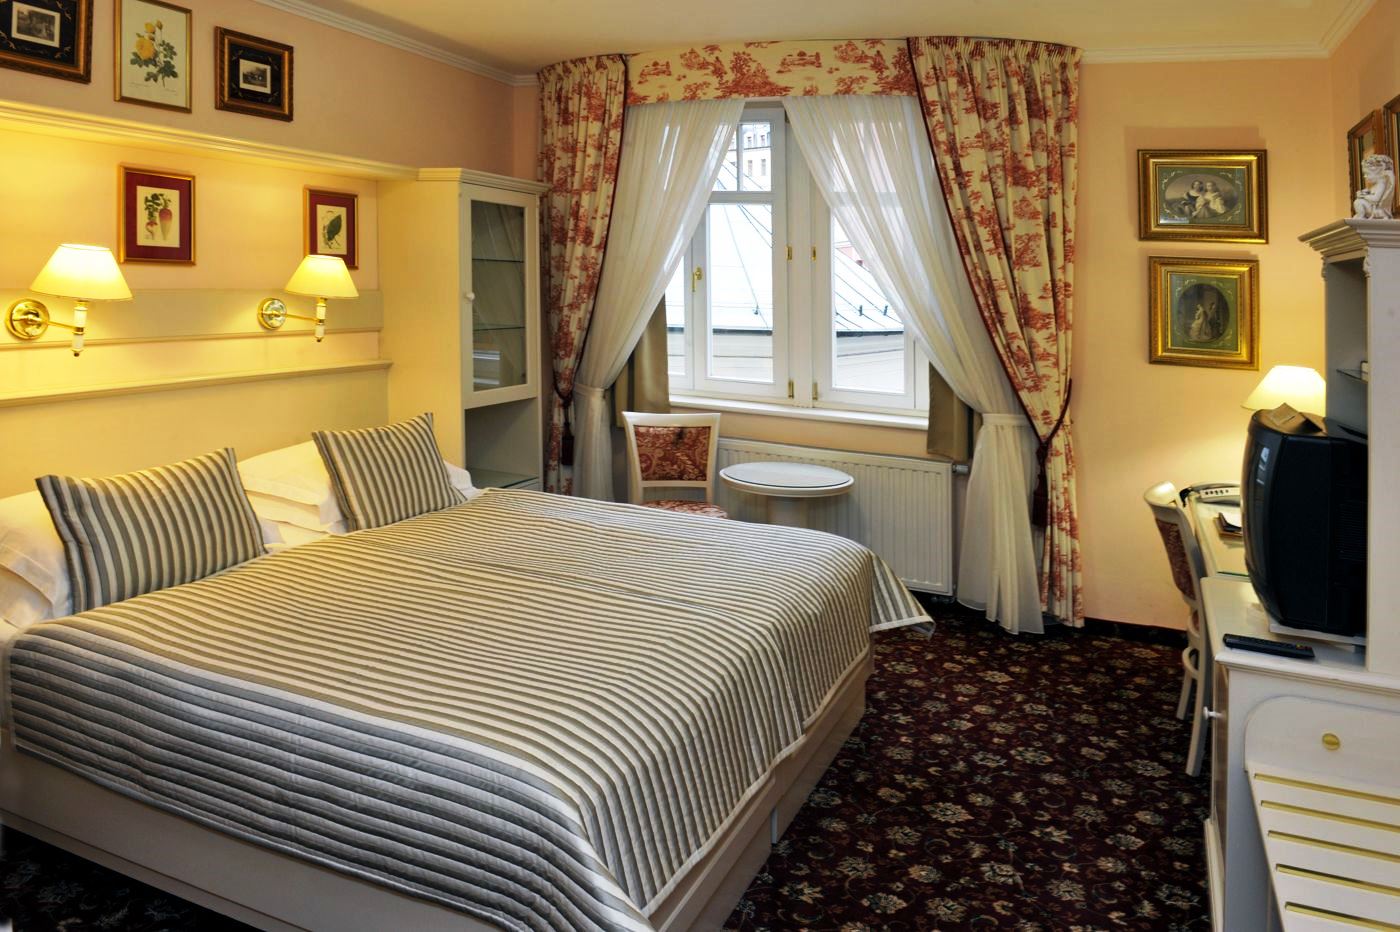 Lázeňský hotel Aura Palace – luxusní ubytování, dvoulůžkový pokoj